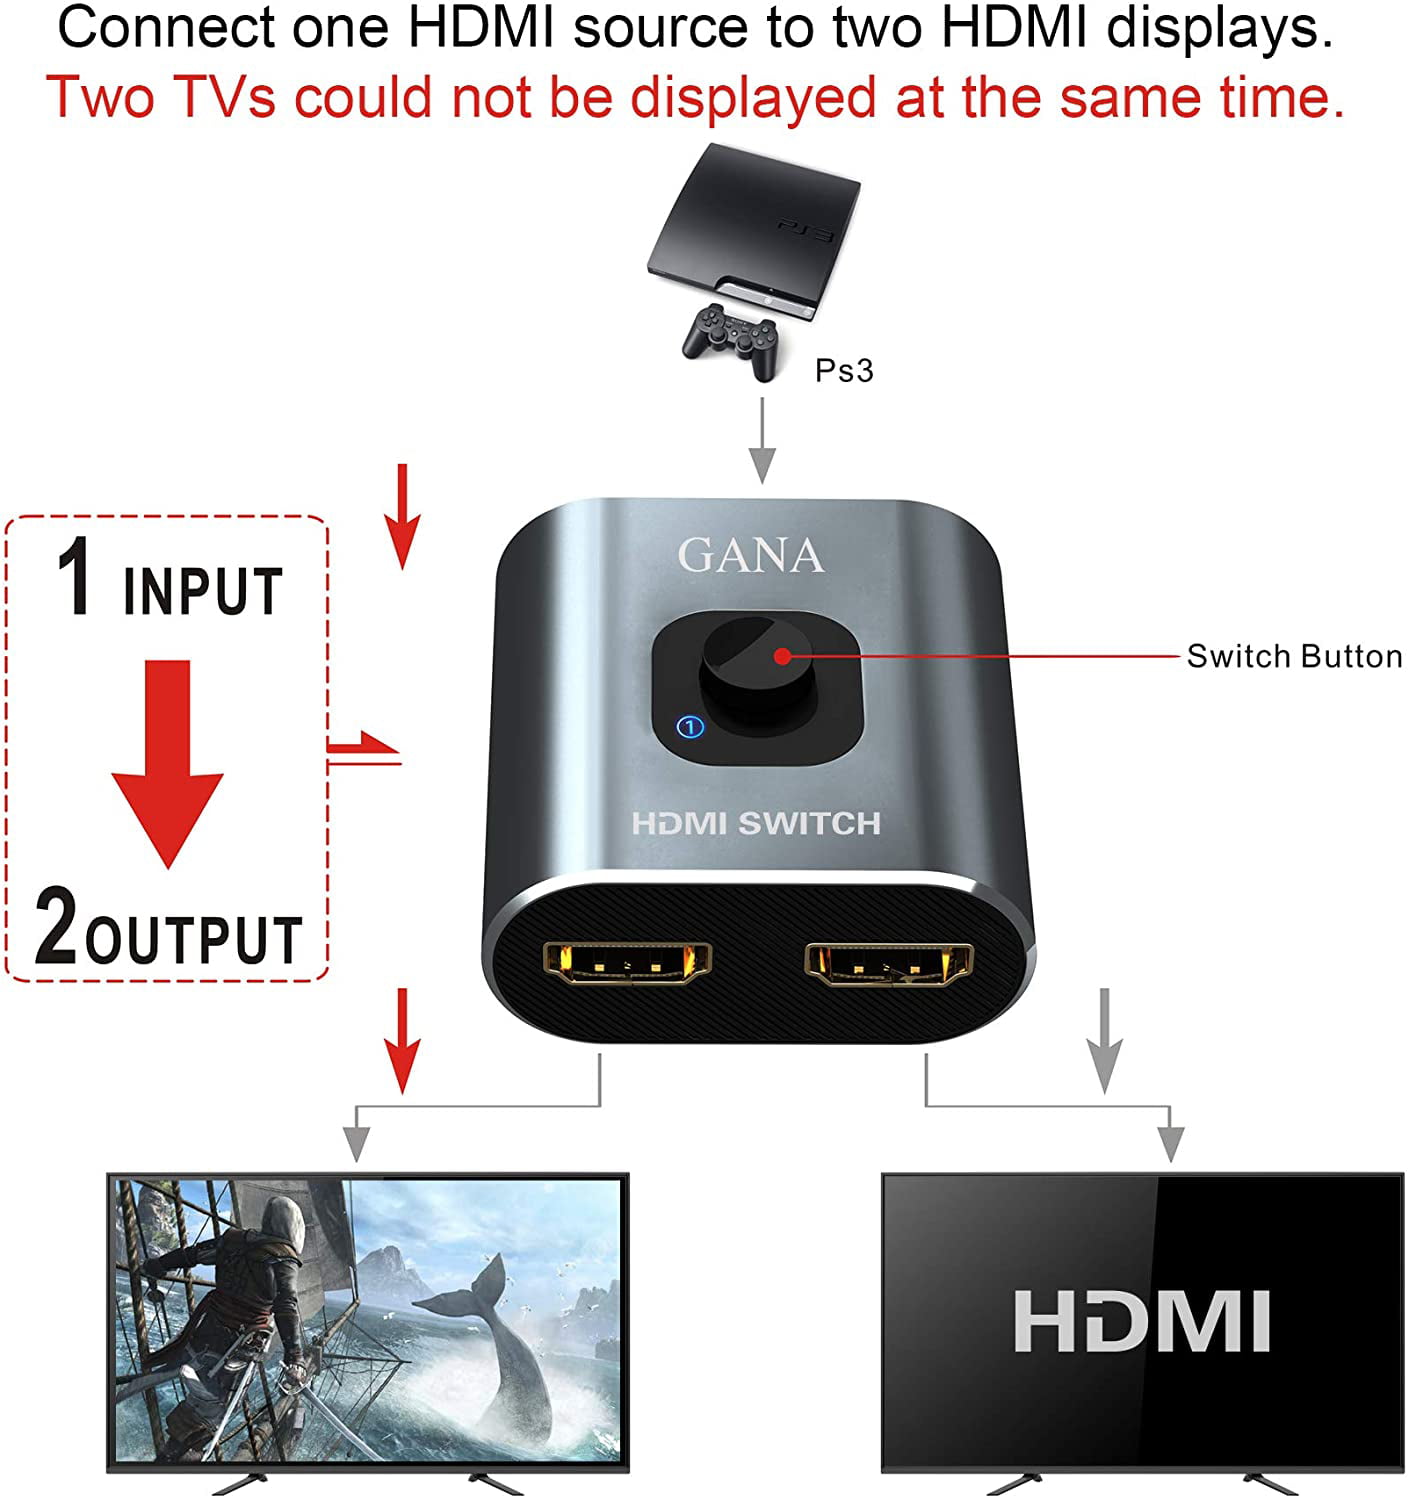 NeweggBusiness - HDMI Switch 4K@120Hz, Bidirectional HDMI2.1 Splitter 2 in 1  Out HDMI Switcher 1 in 2 Out Box Support 4K@120Hz,8K@60Hz Compatible with  PS5/4 Xbox TV Fire Stick Nintendo